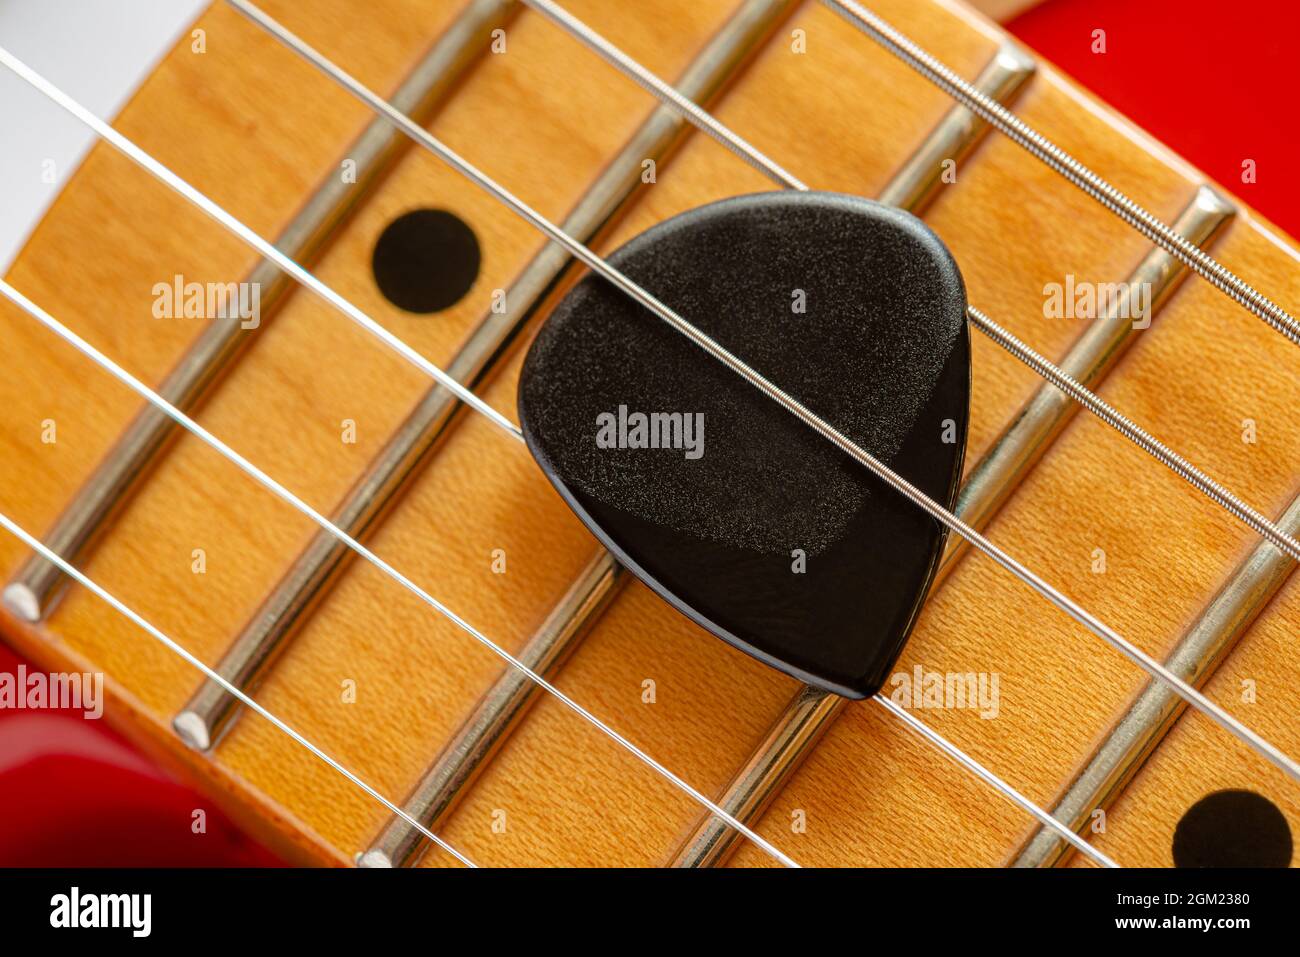 Dettaglio del collo e delle corde di una chitarra elettrica rossa, con un plectrum nero chiamato anche mediatore Foto Stock